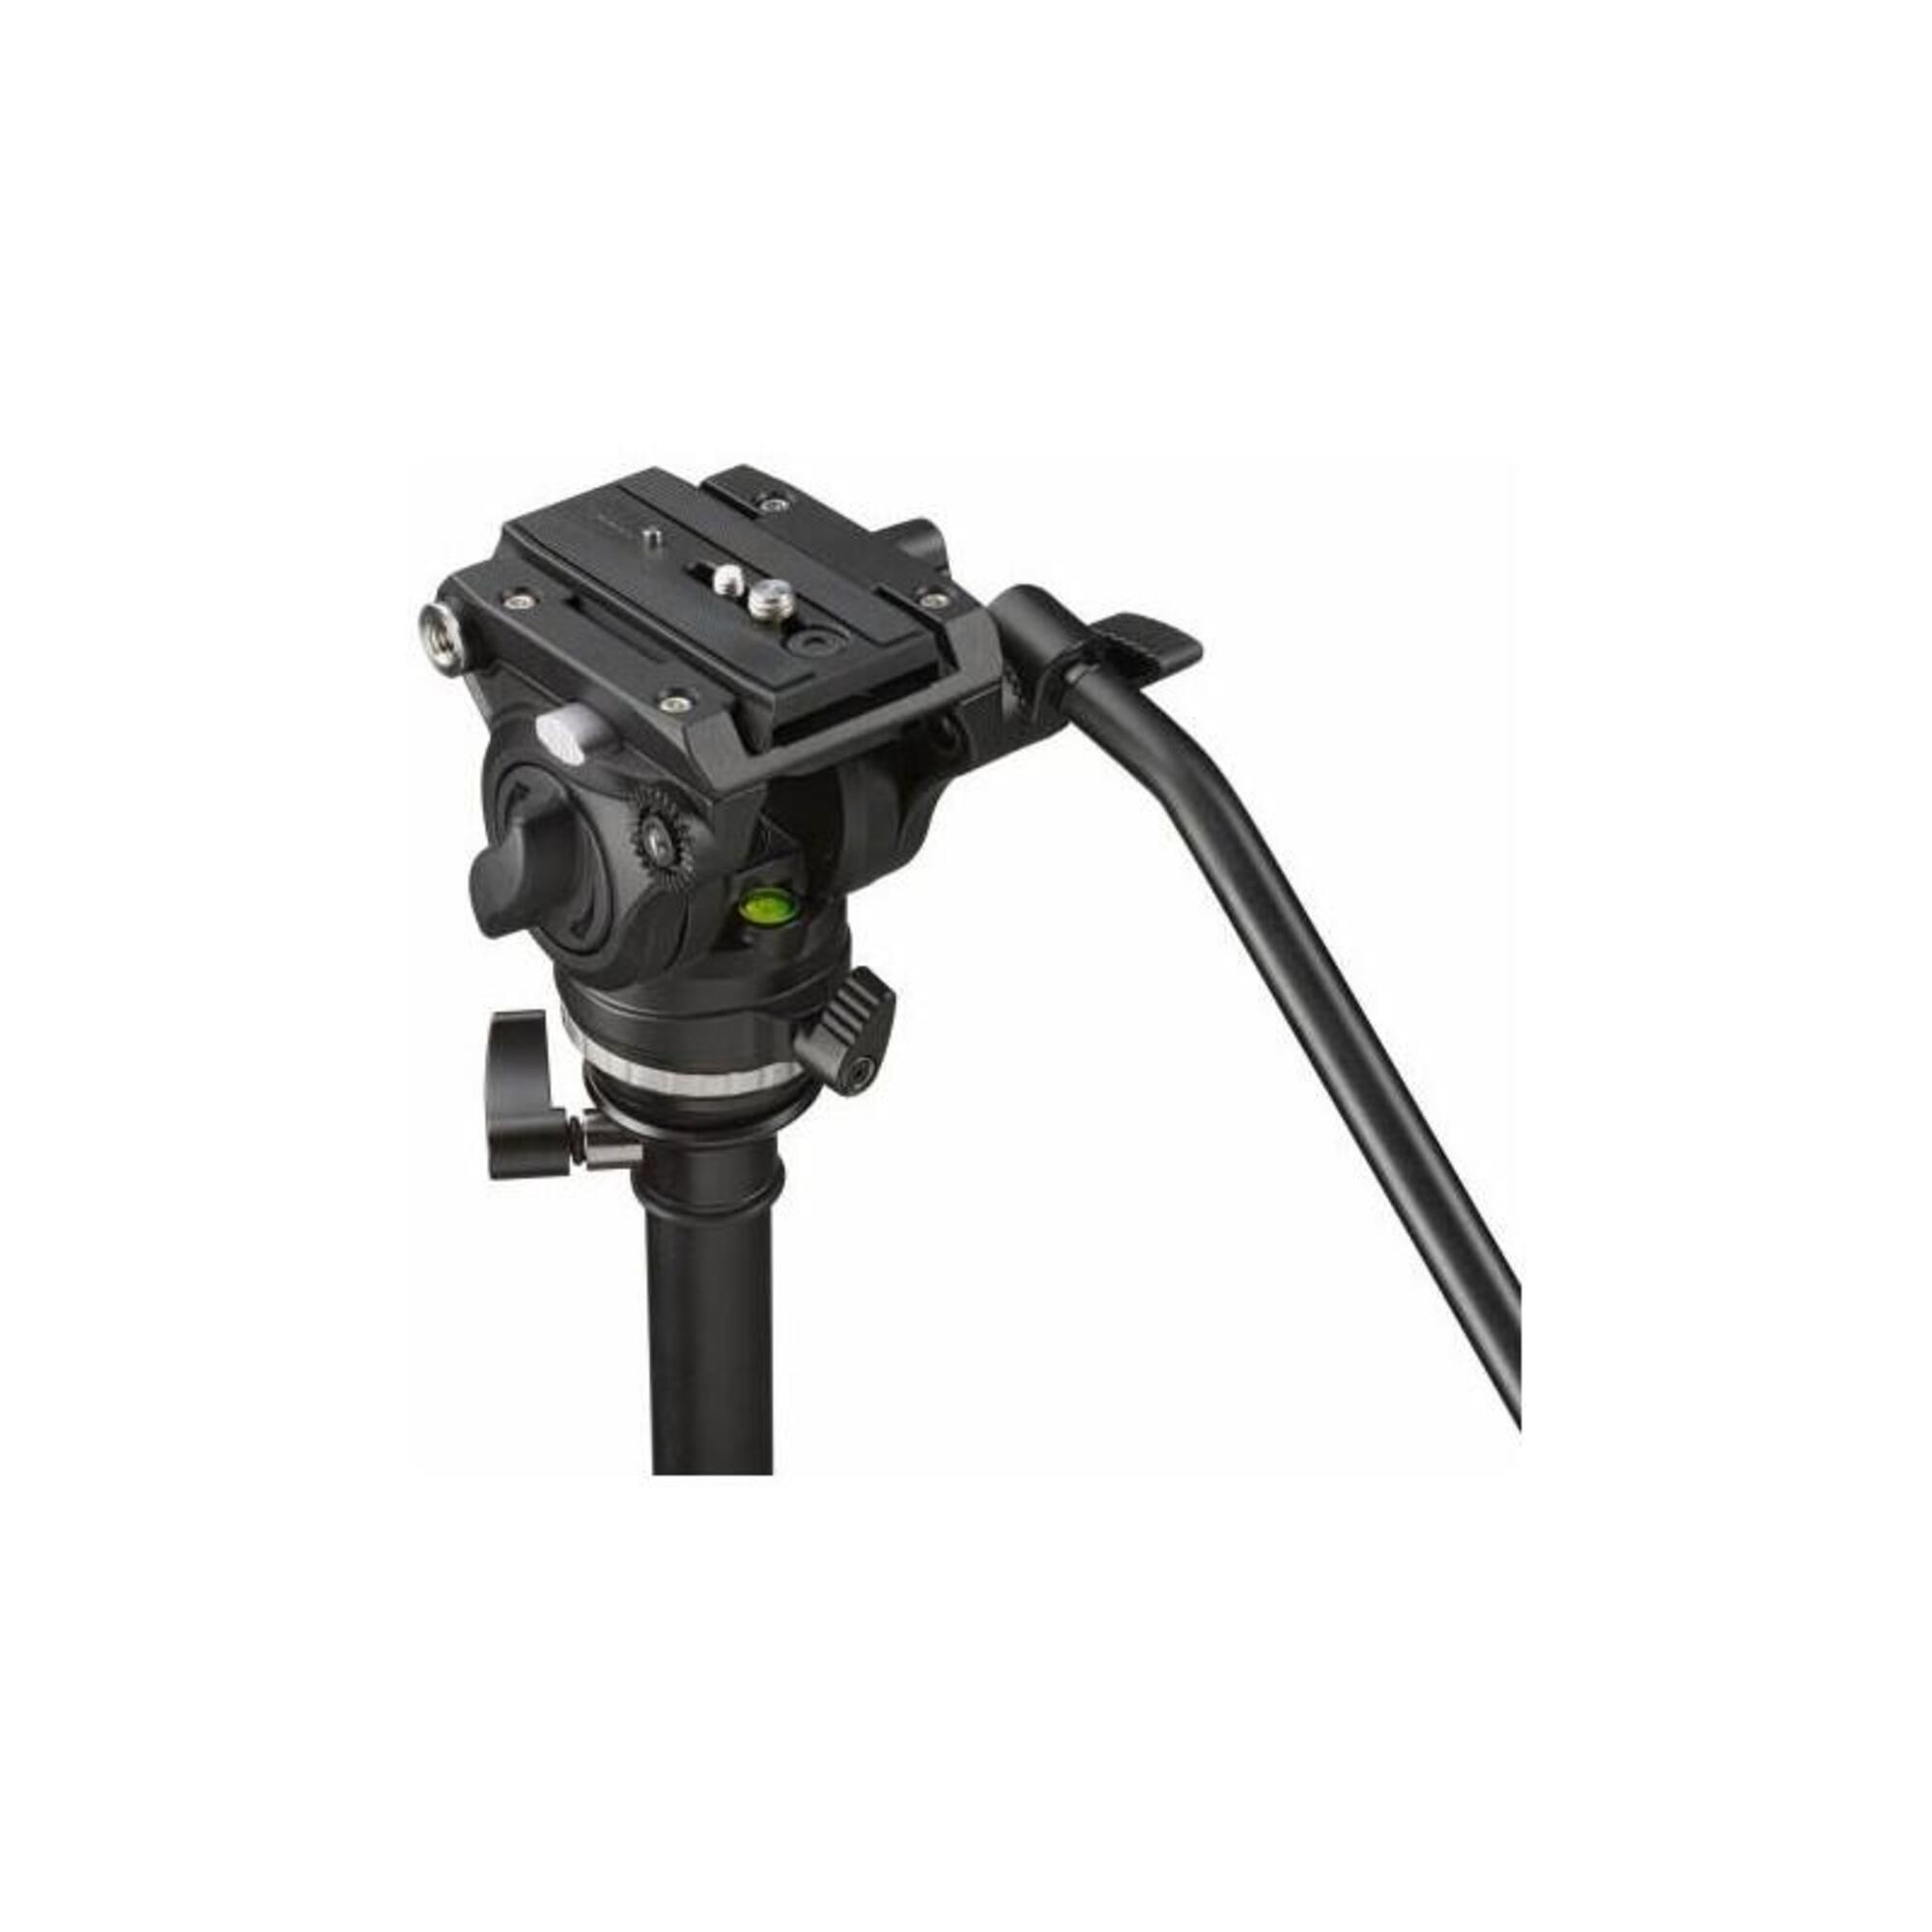 Trípode BX-5 Pro para Fotografia, video, prismaticos y Telescopios terrestres